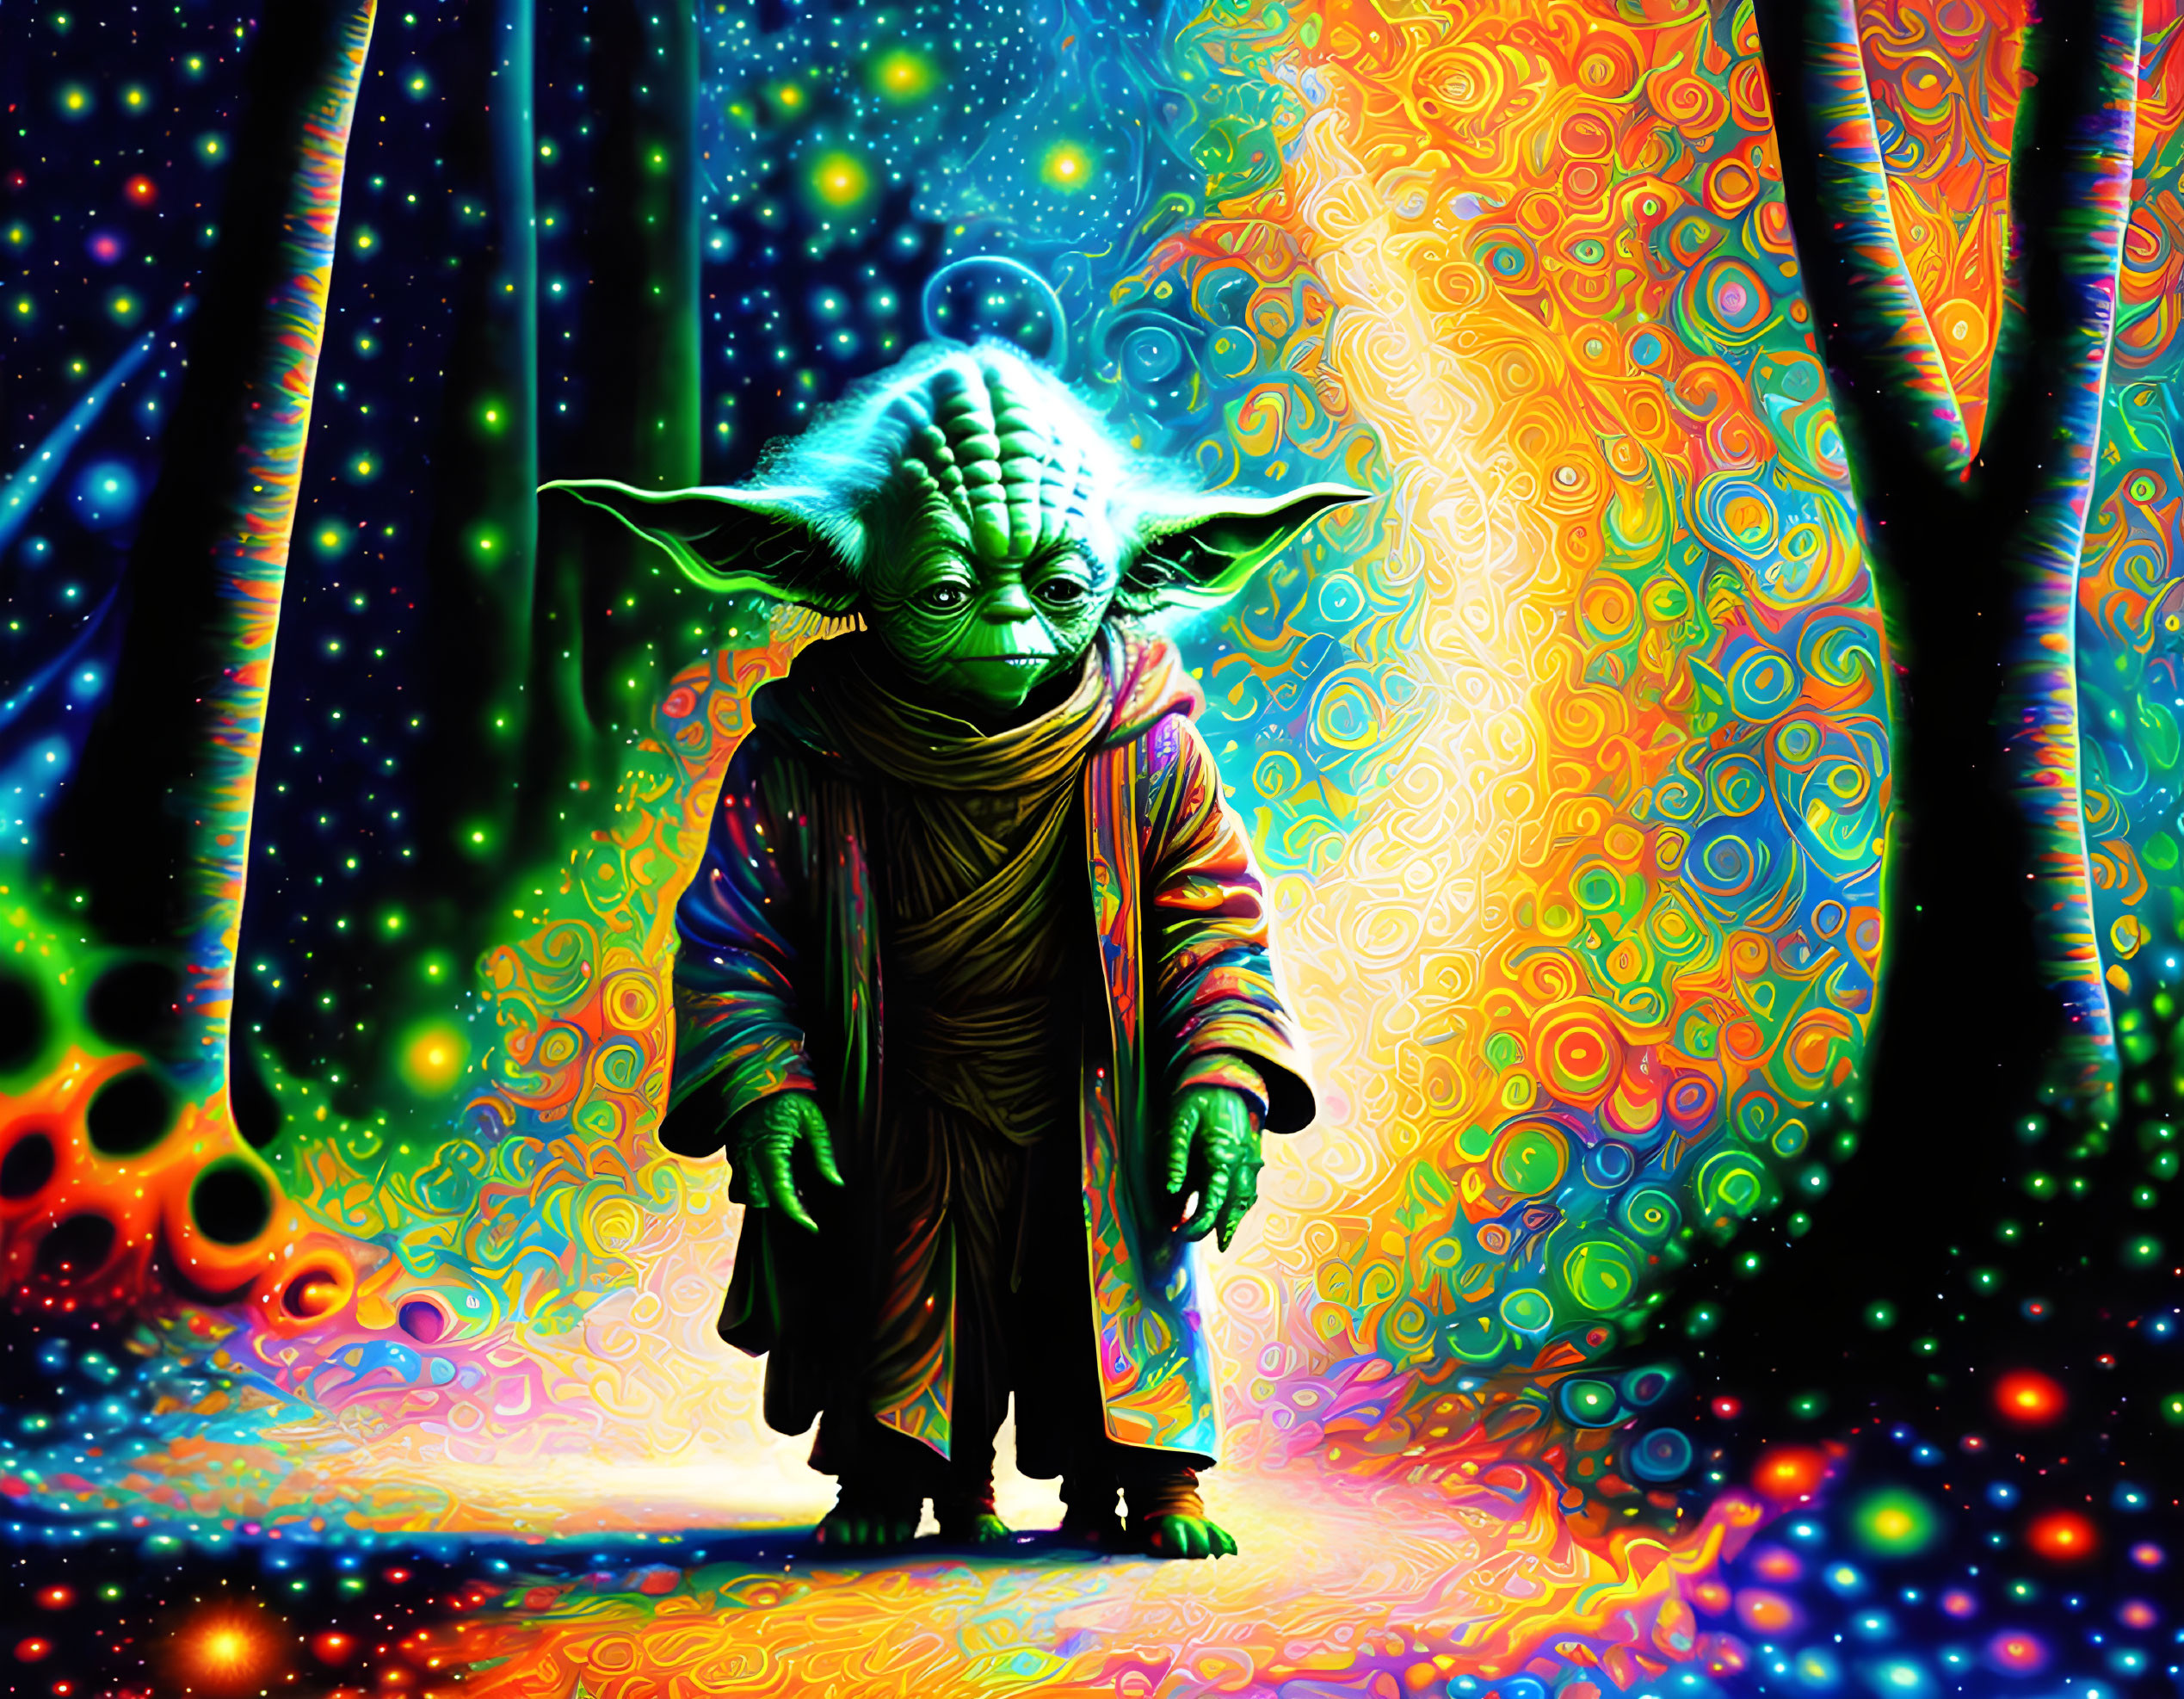 Yoda's Experience